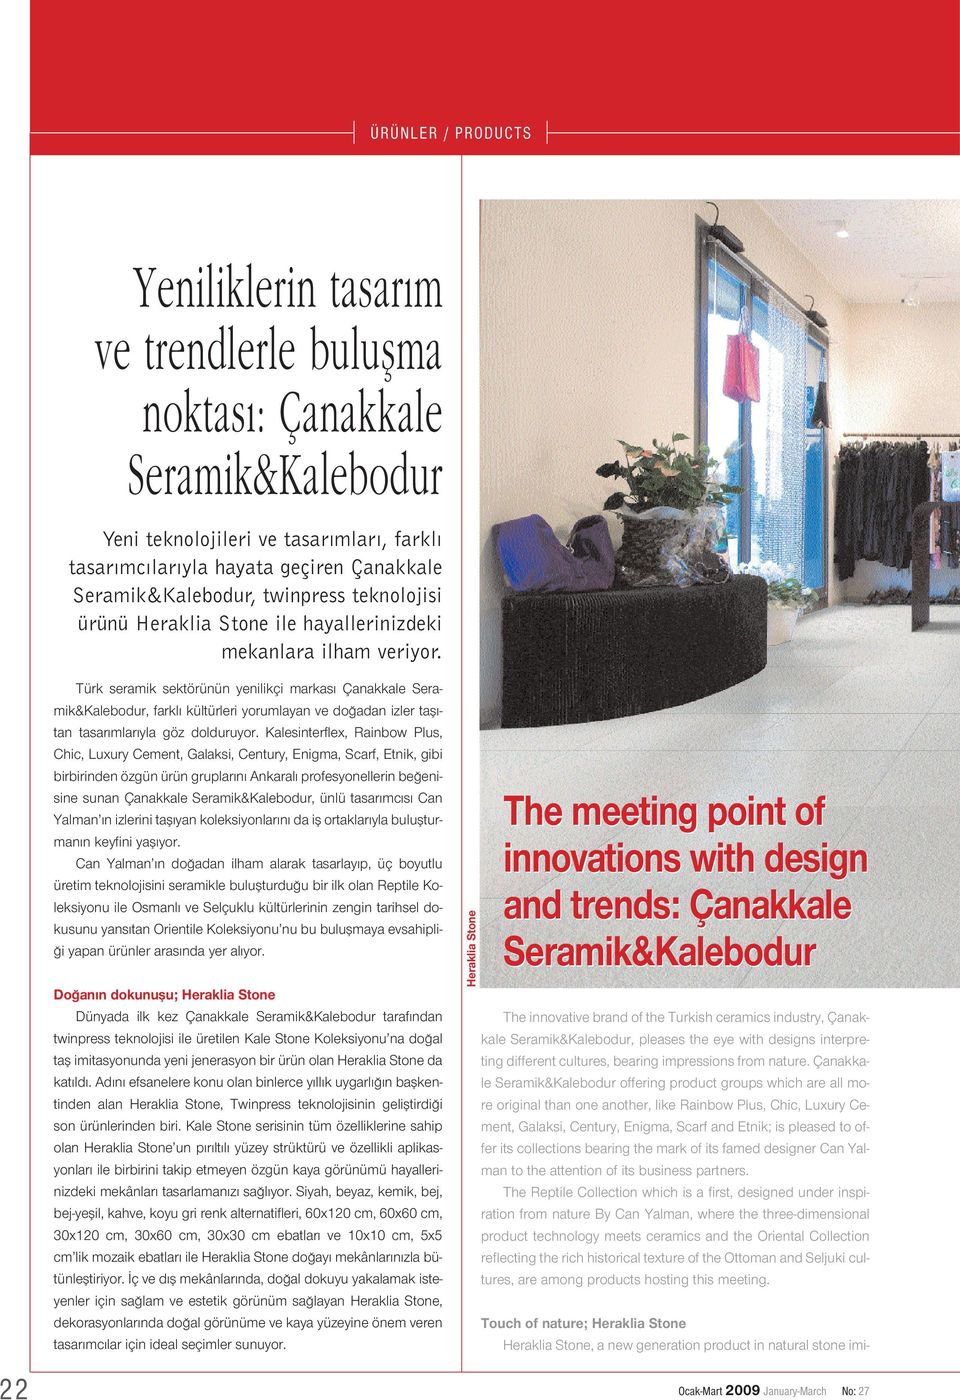 Türk seramik sektörünün yenilikçi markas Çanakkale Seramik&Kalebodur, farkl kültürleri yorumlayan ve do adan izler tafl - tan tasar mlar yla göz dolduruyor.